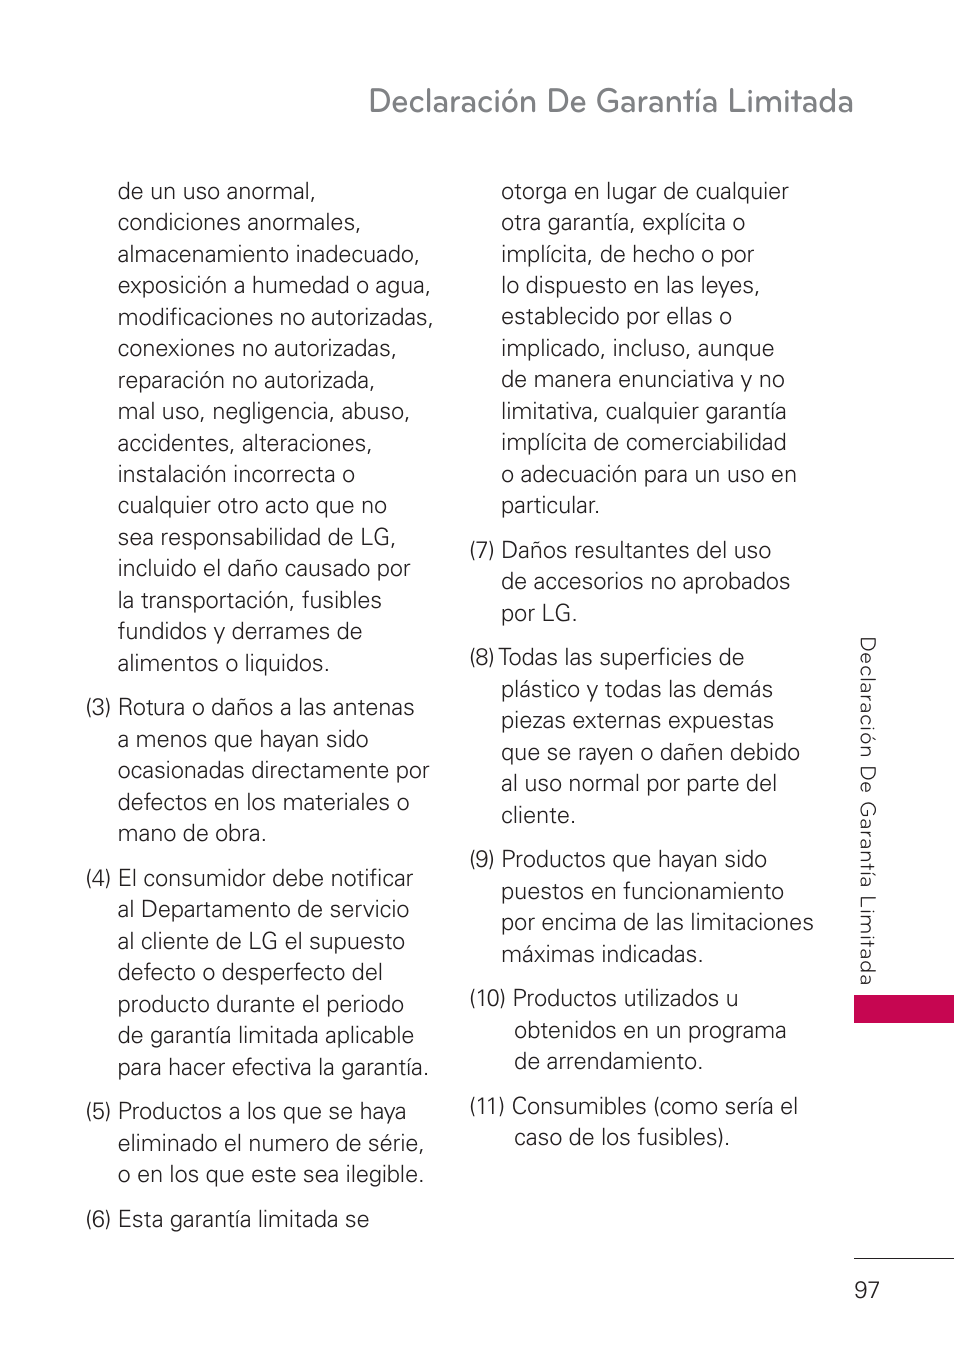 Declaración de garantía limitada | LG UN161 Manual del usuario | Página 99 / 105